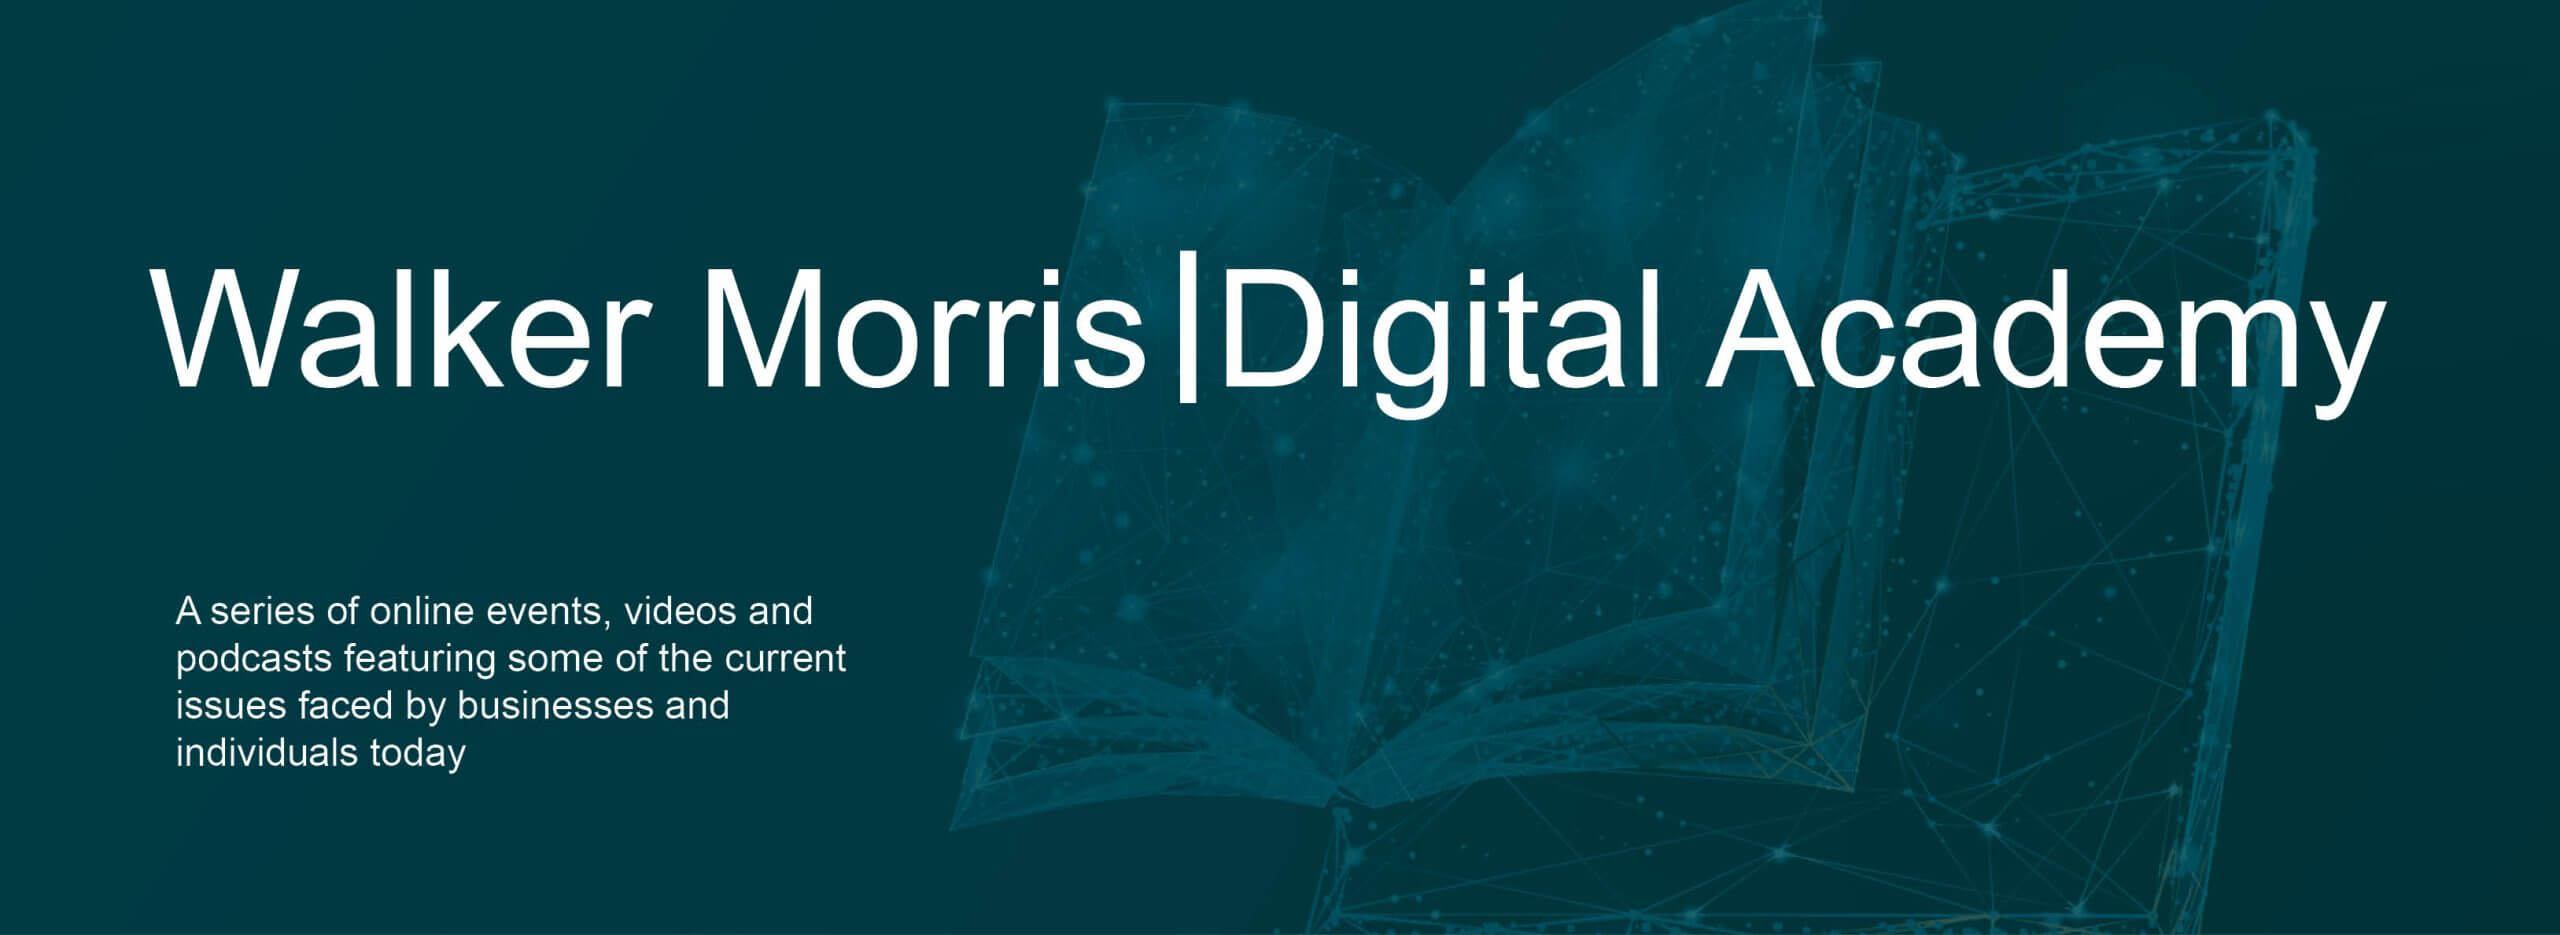 Walker Morris Digital Academy Header Image - an open book with a dark green overlay